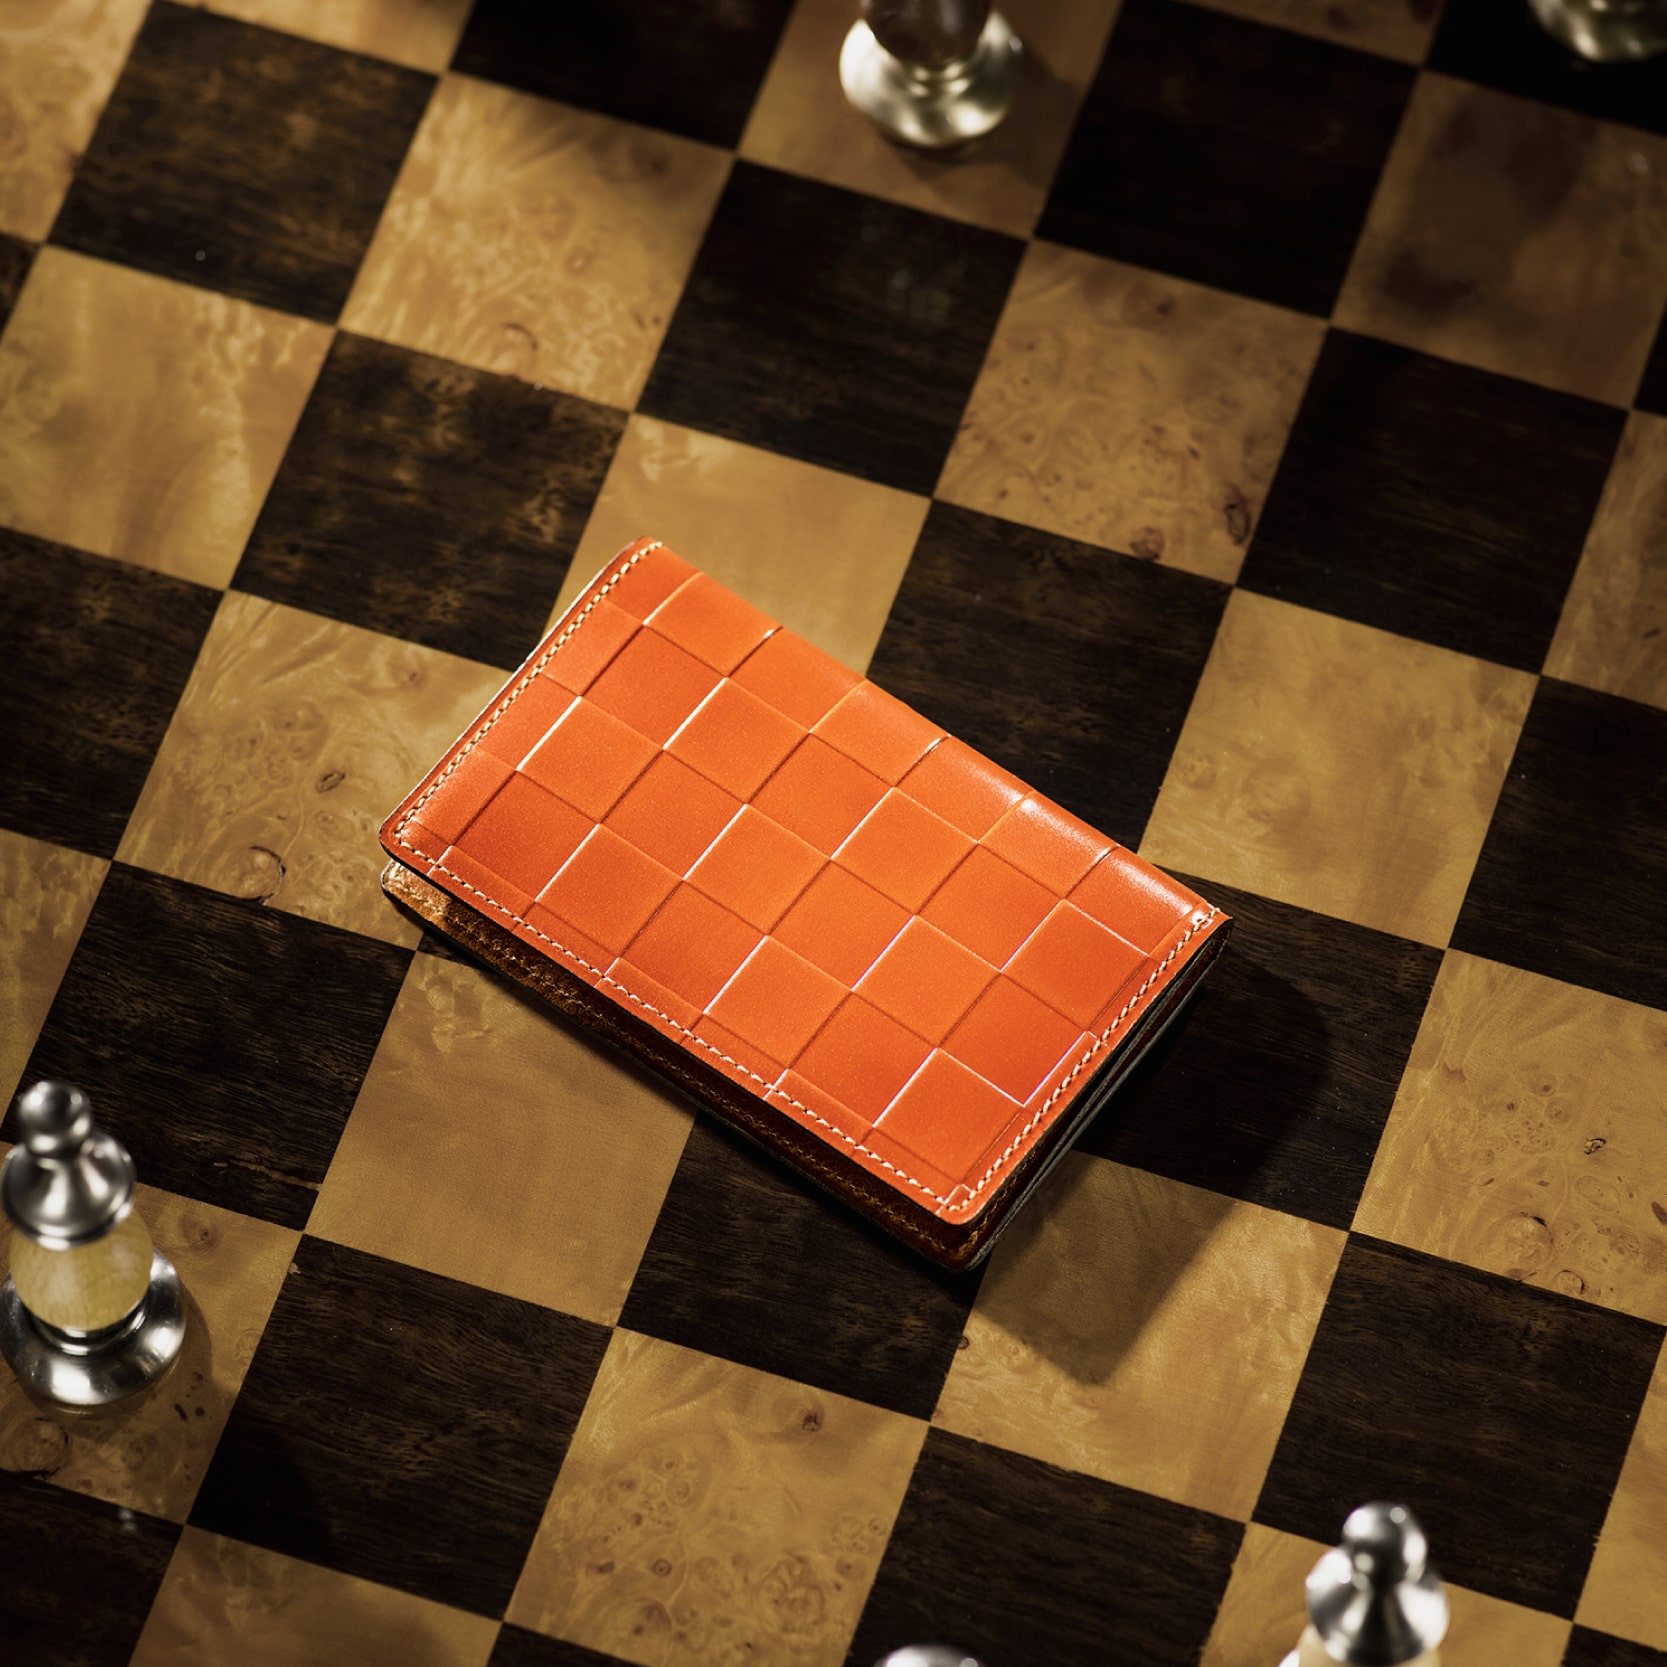 チェスボード ルーク | ココマイスター公式サイト